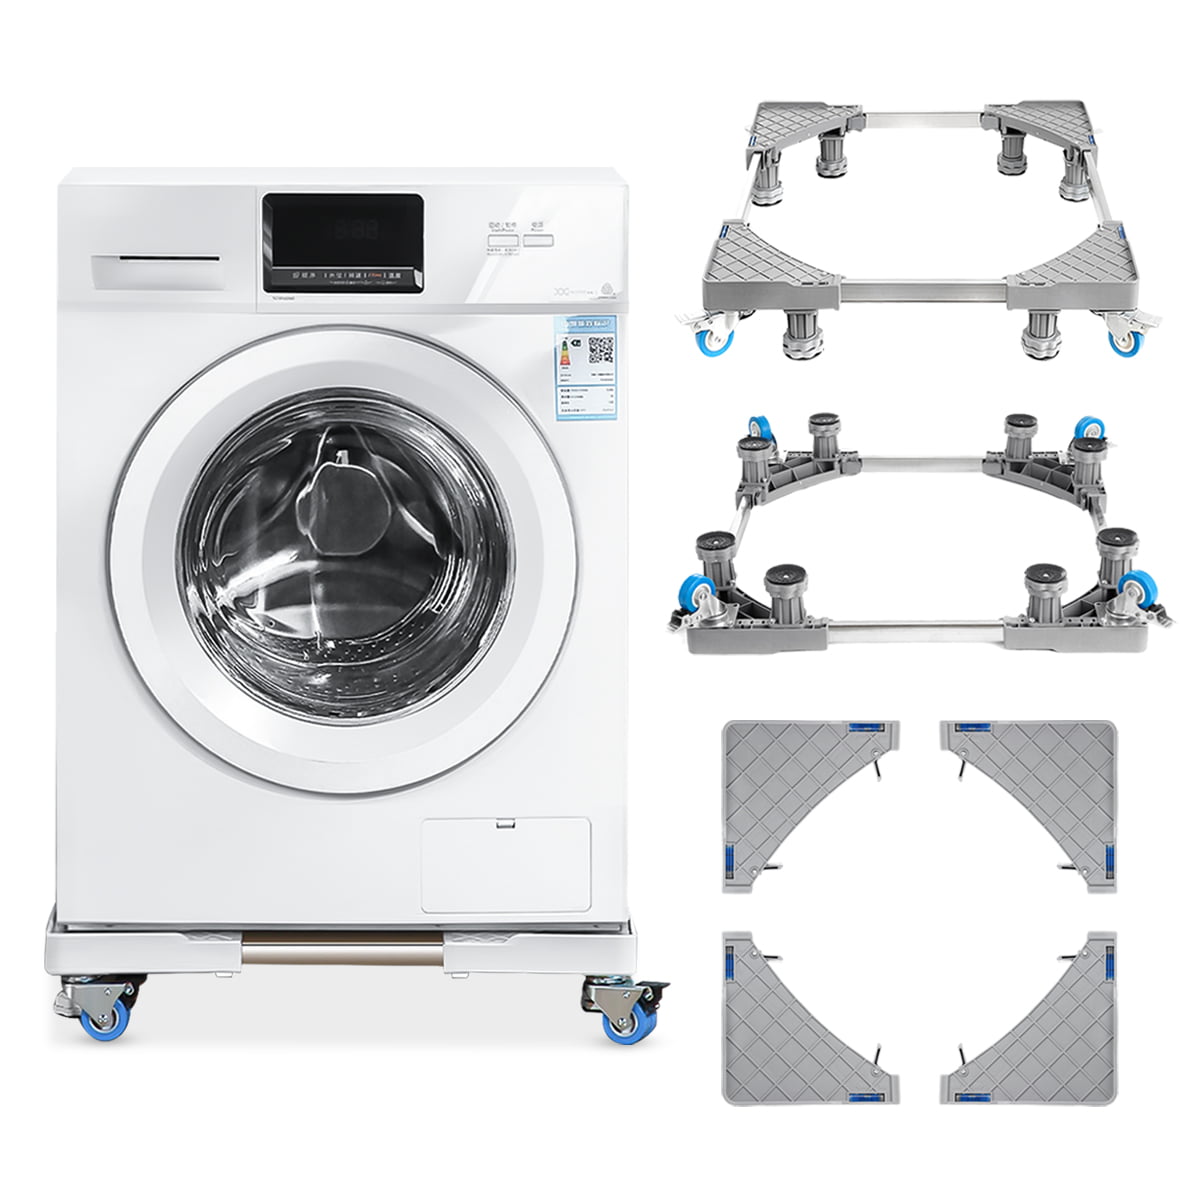 8 Foots Pro Adjustable Washing Machine Fridge Base Laundry Pedestal Raised Stand